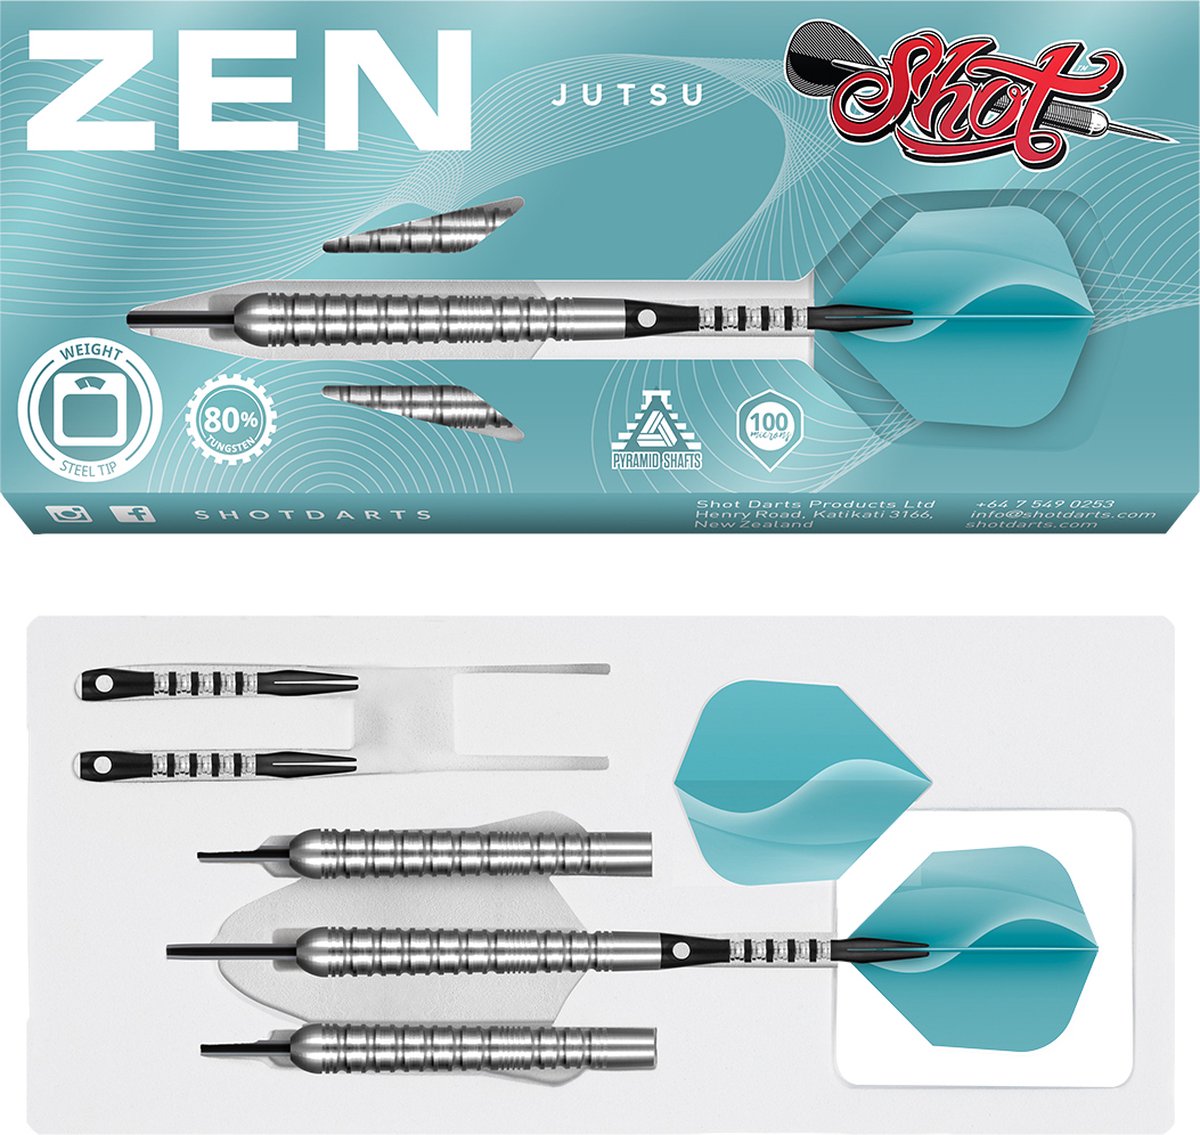 Shot Zen Jutsu 80% 23 gram